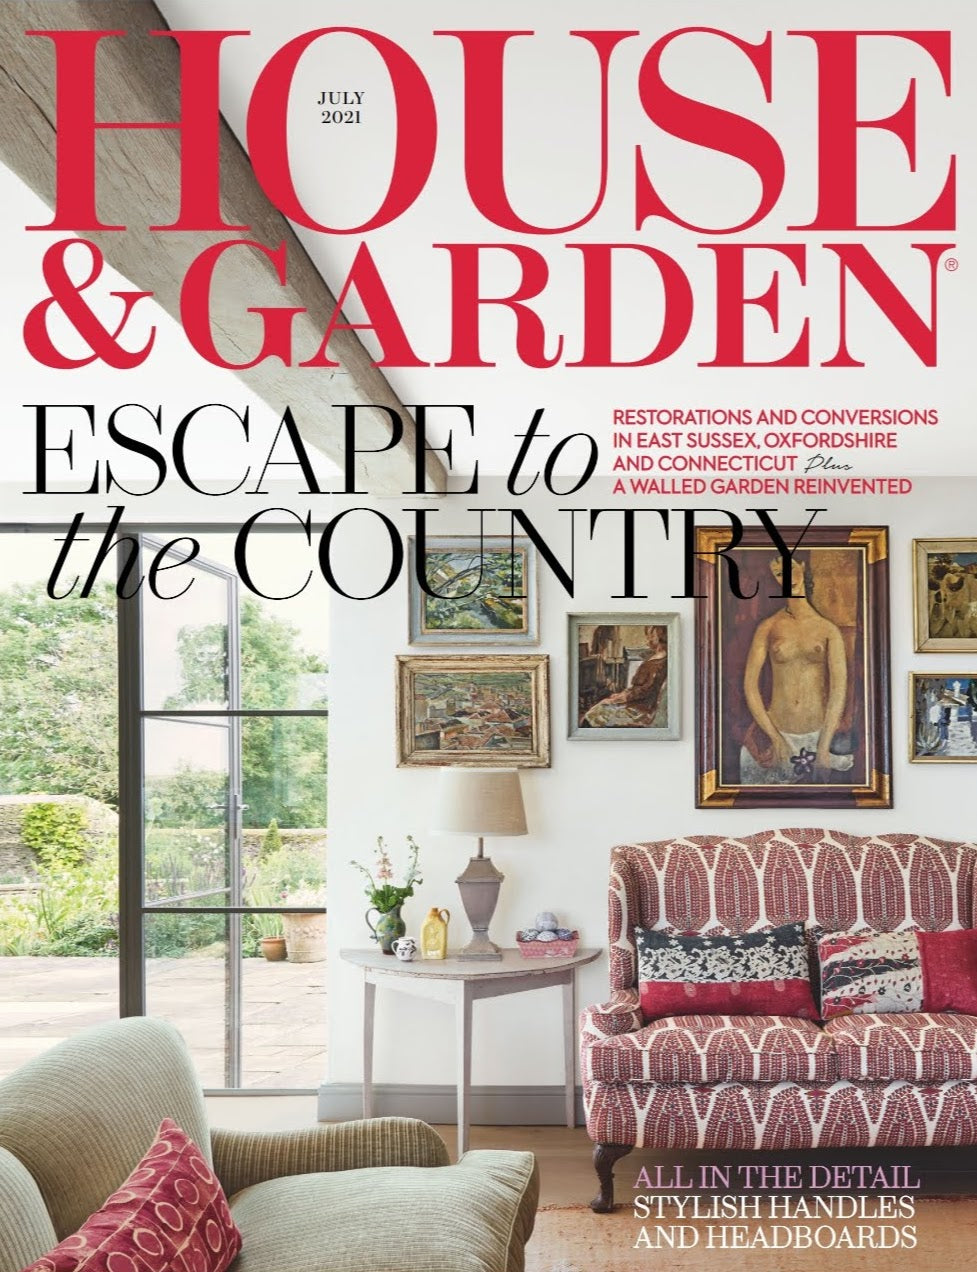 JUNE 2021: House & Garden Magazine Art Edit Feature